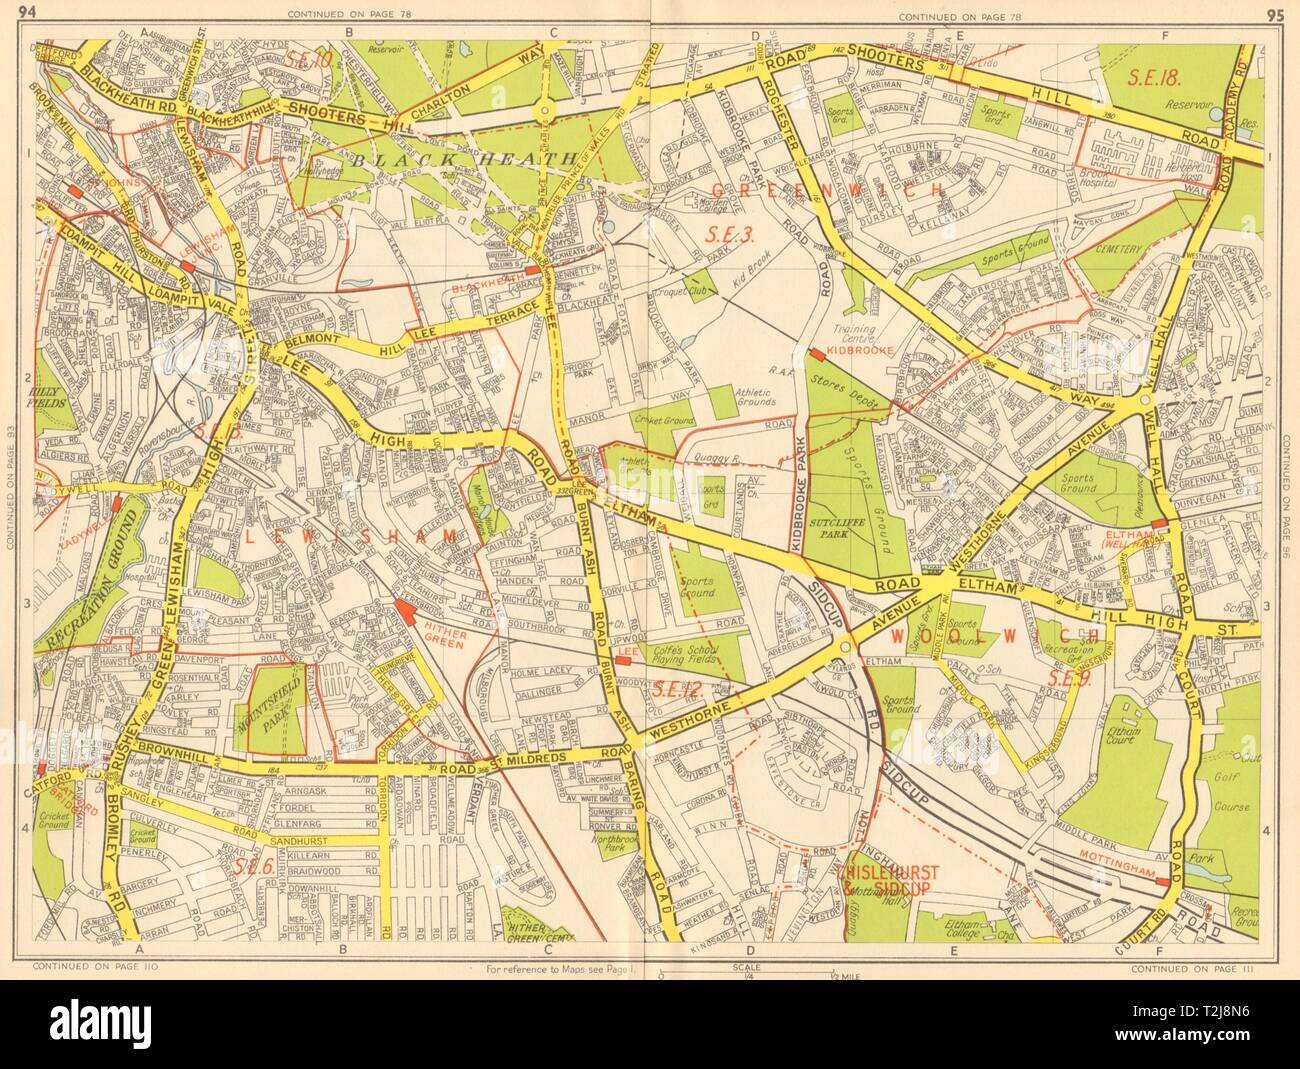 LEWISHAM Catford Eltham Blackheath Kidbrooke Ladywell. GEOGRAPHERS' A-Z 1948 map Stock Photo